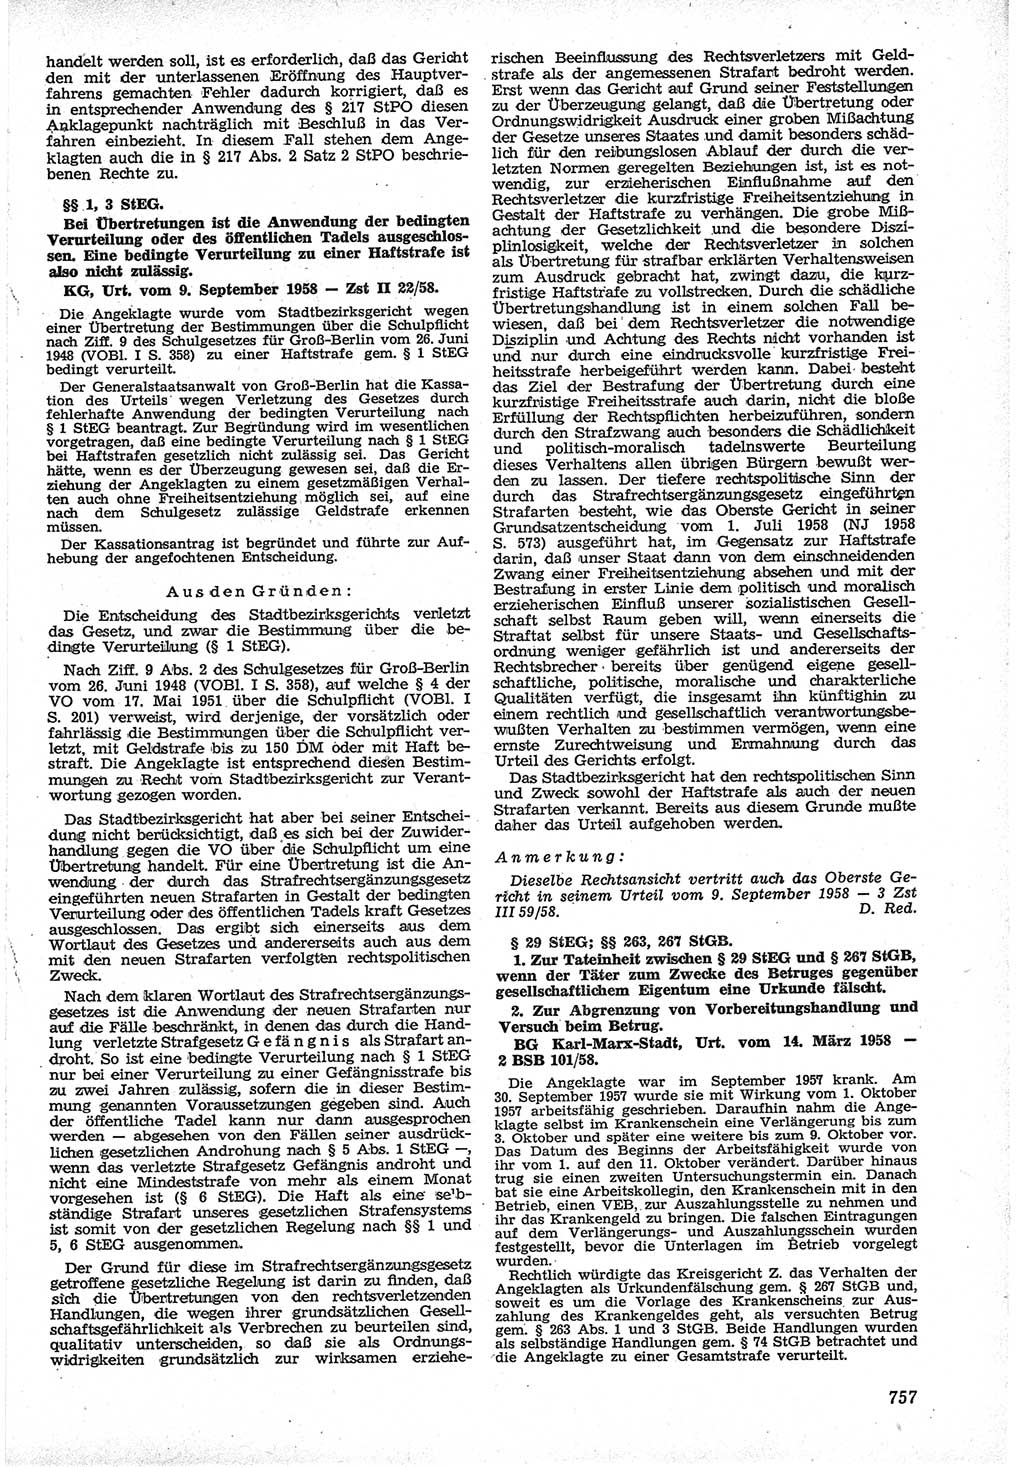 Neue Justiz (NJ), Zeitschrift für Recht und Rechtswissenschaft [Deutsche Demokratische Republik (DDR)], 12. Jahrgang 1958, Seite 757 (NJ DDR 1958, S. 757)